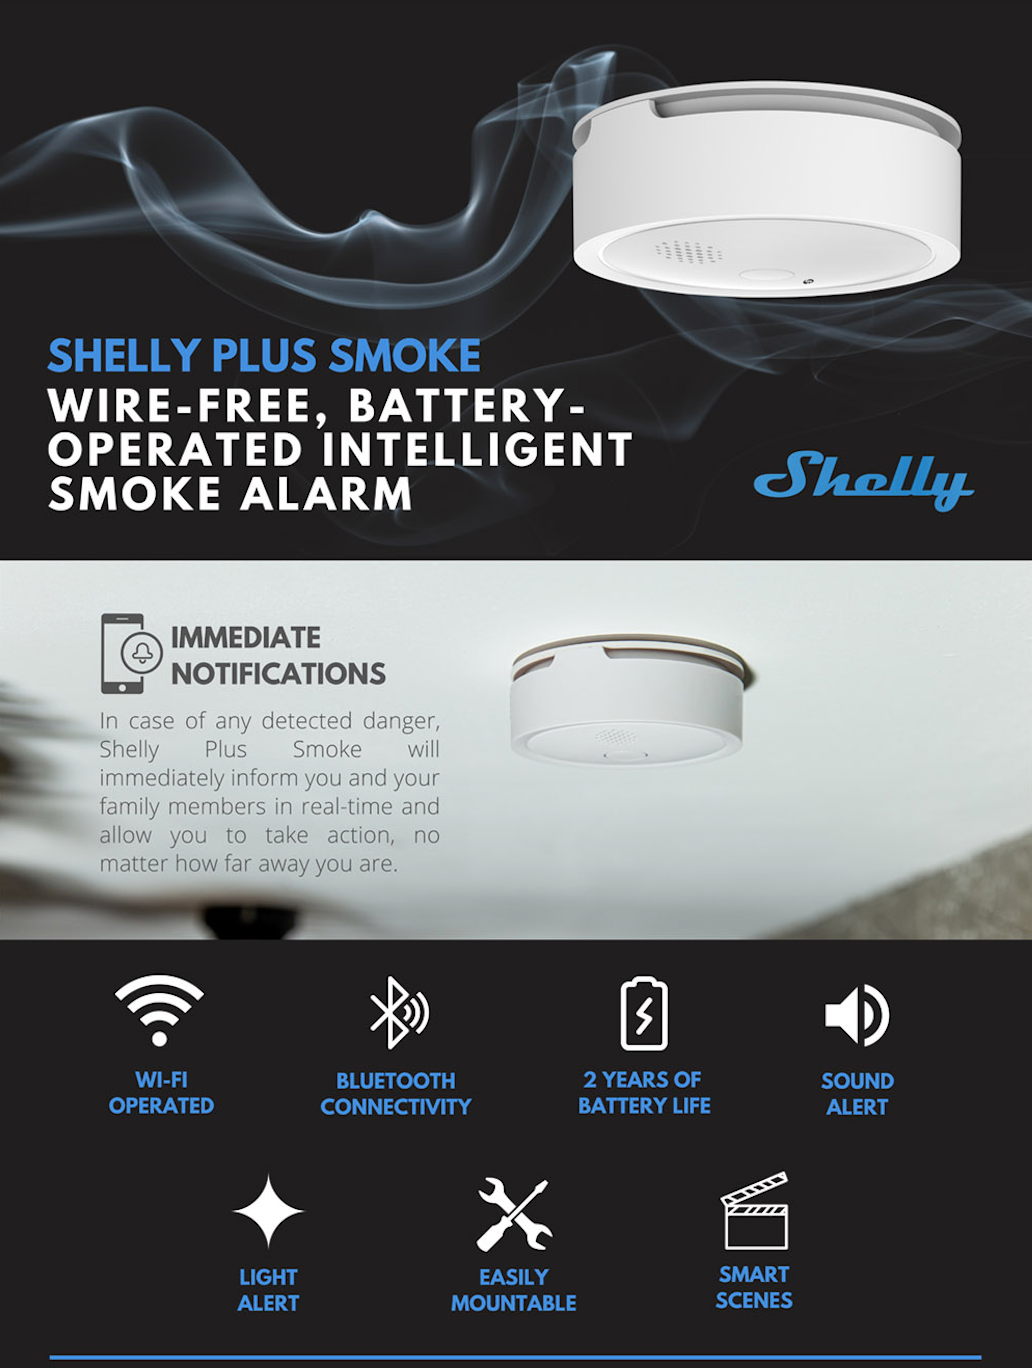 Shelly plus smoke liga-se ao wifi, conectividade bluetooth, até 2 anos de durabilidade da pilha, alertas sonóros e visuais conjugados com uma montagem fácil.